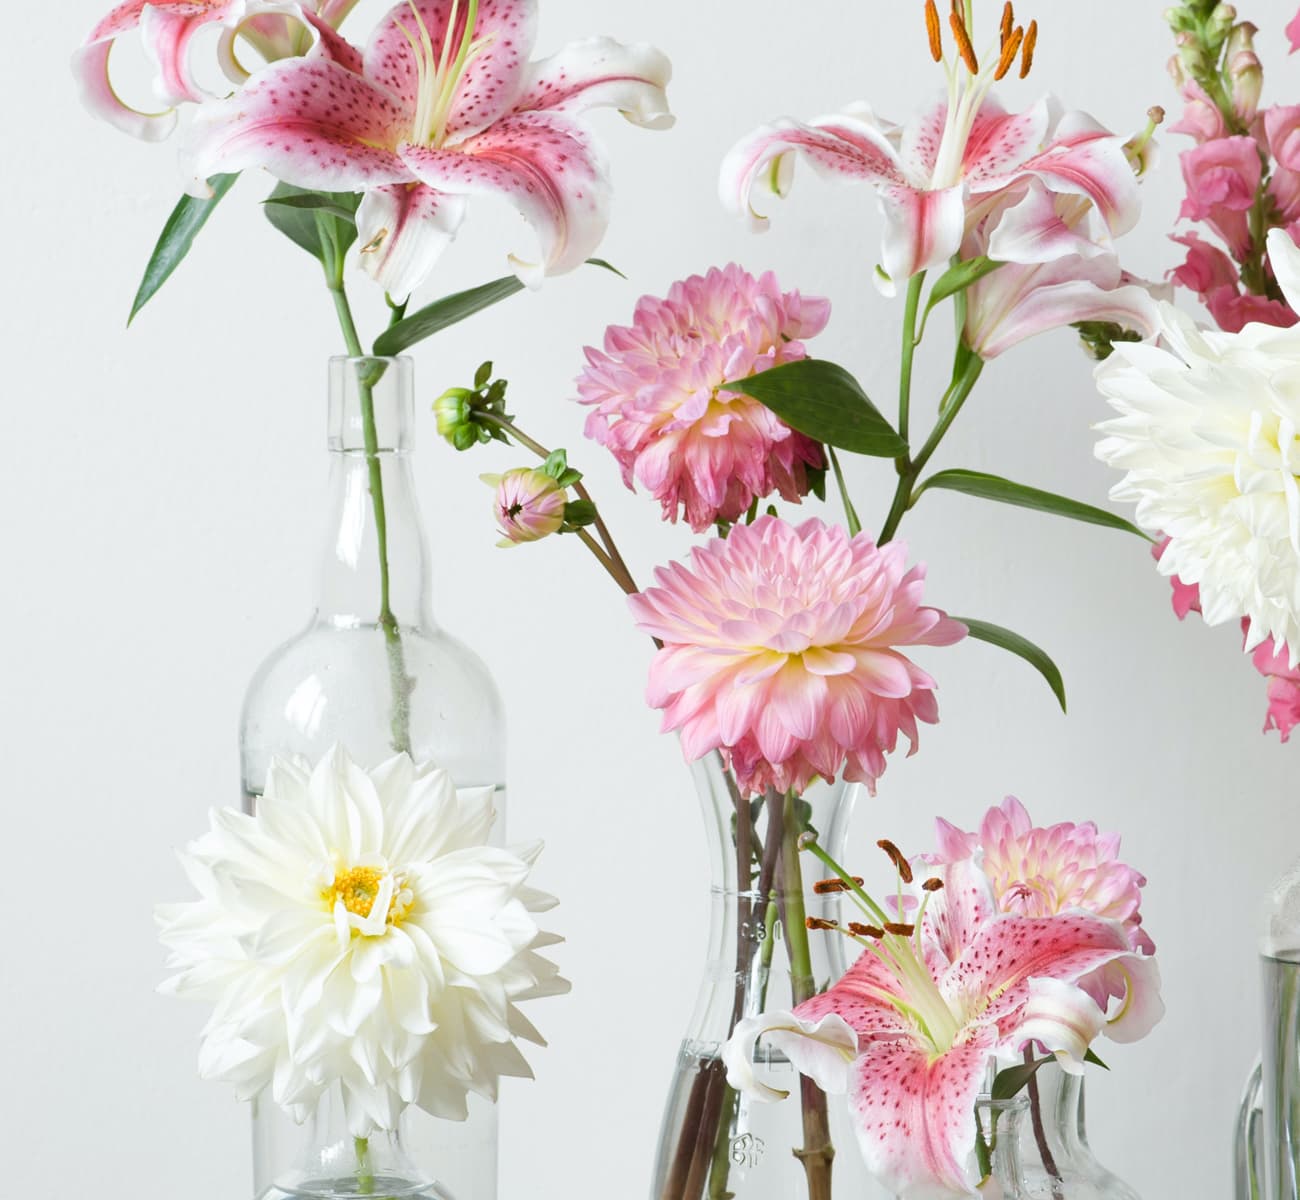 Single stems arranged in bud vases showcase the varieties when ordering fresh wedding flowers online.